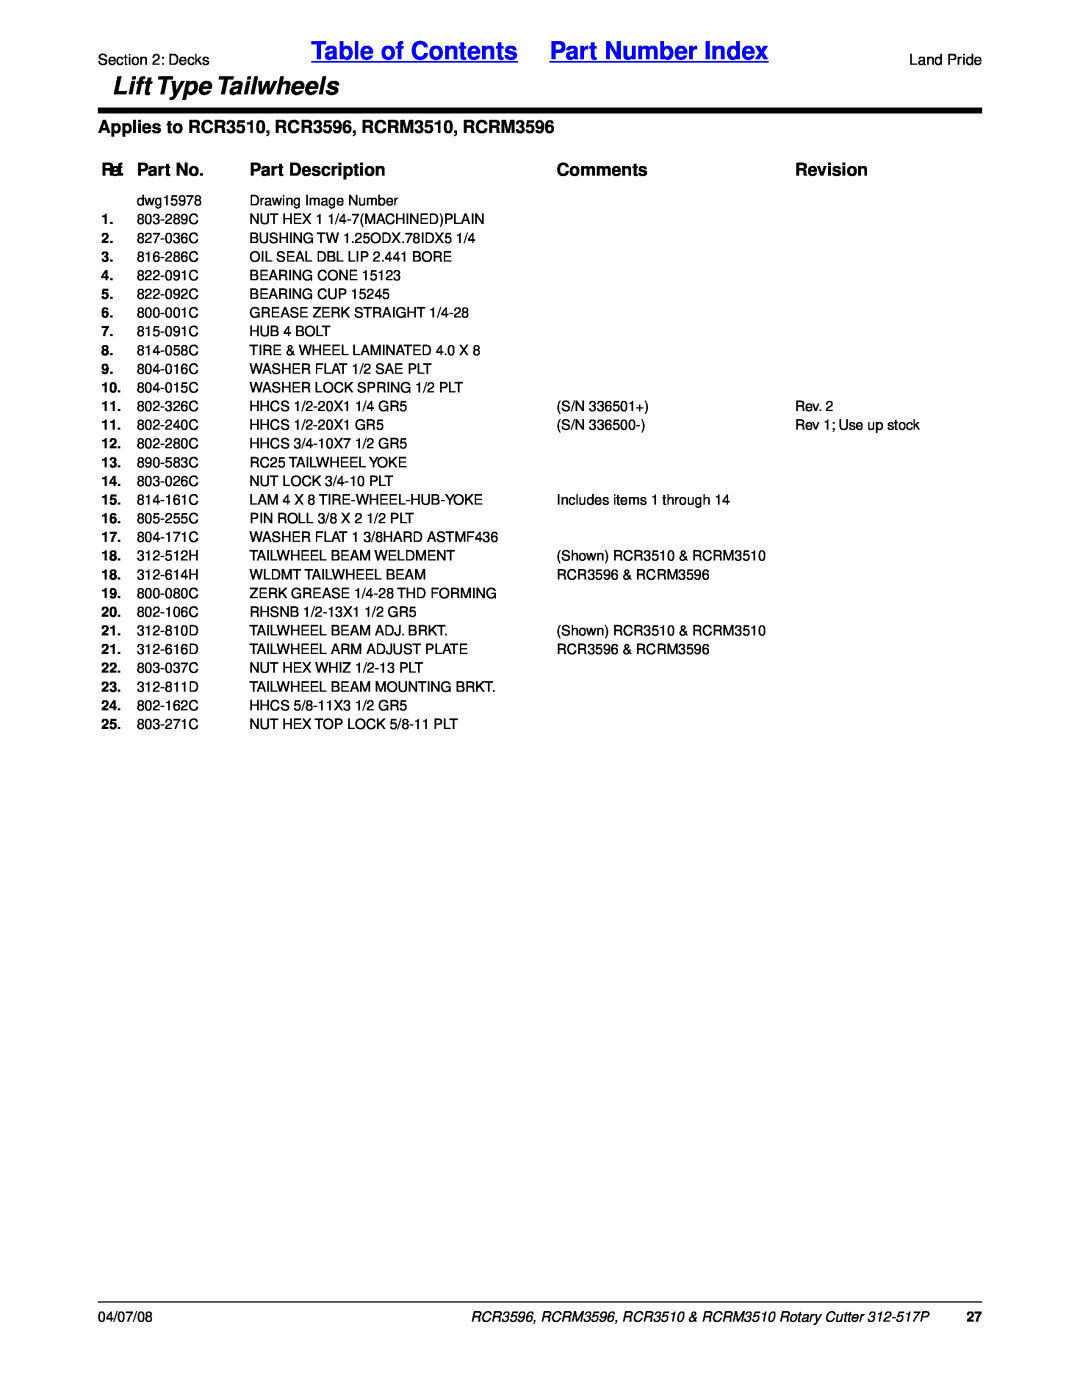 Land Pride RCR3596 Table of Contents Part Number Index, Lift Type Tailwheels, Ref. Part No, Part Description, Comments 